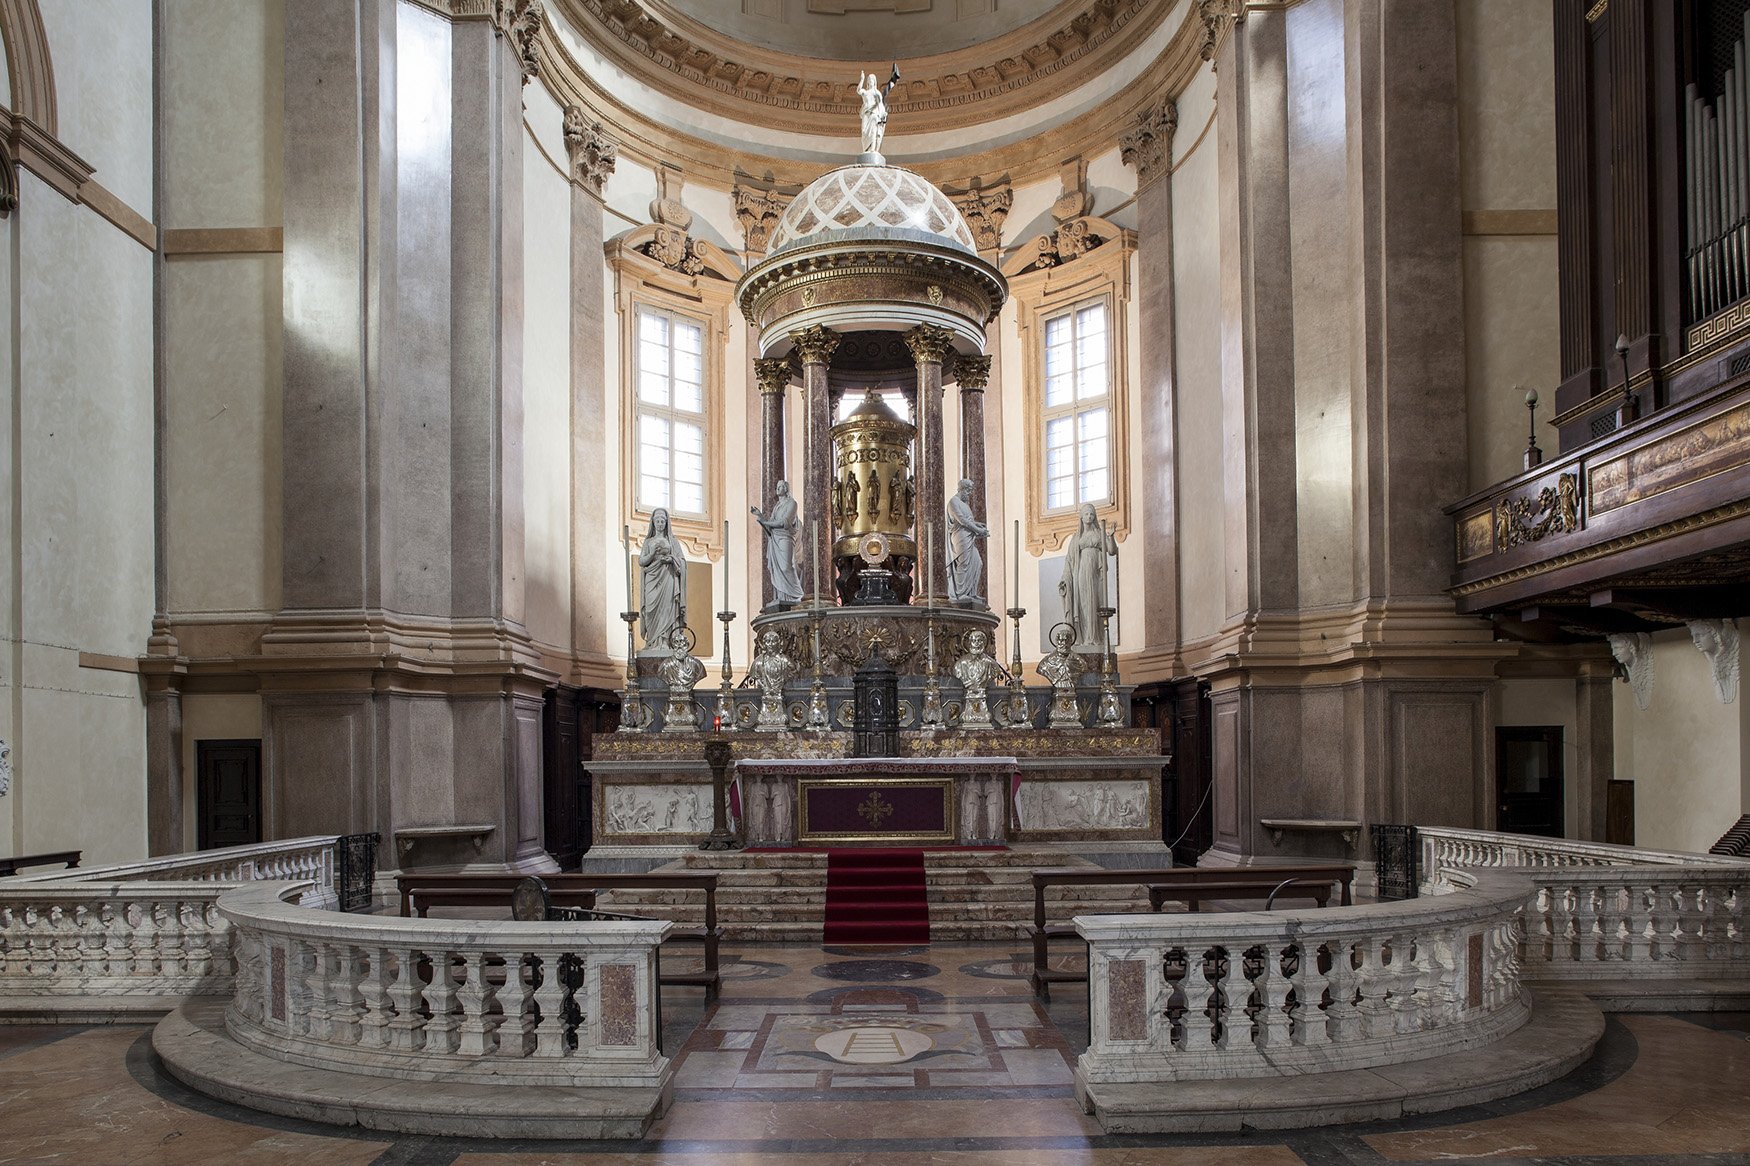 Claudio Parmiggiani, Corona di spine, 2014 - allestimento nella Chiesa di San Fedele, altare maggiore - photo Luca Casonato